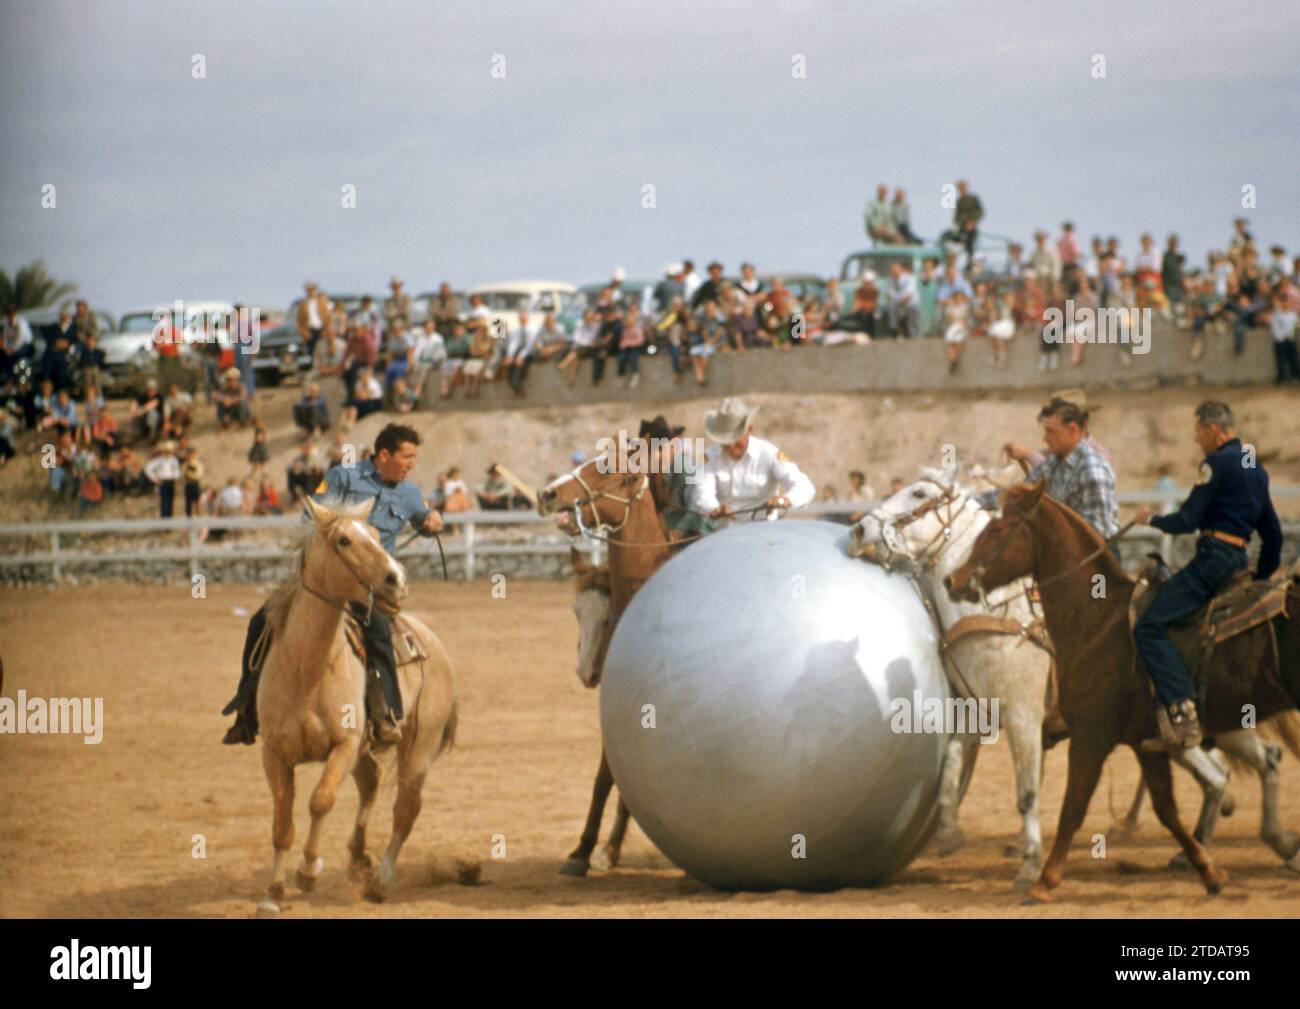 PHOENIX, Arizona - 15 MARZO: Il vice sceriffo della contea di Maricopa gioca a Pushball con un enorme pallone d'argento nell'arena dell'Arizona Biltmore Hotel il 15 marzo 1955 a Phoenix, Arizona. (Foto di Hy Peskin) Foto Stock